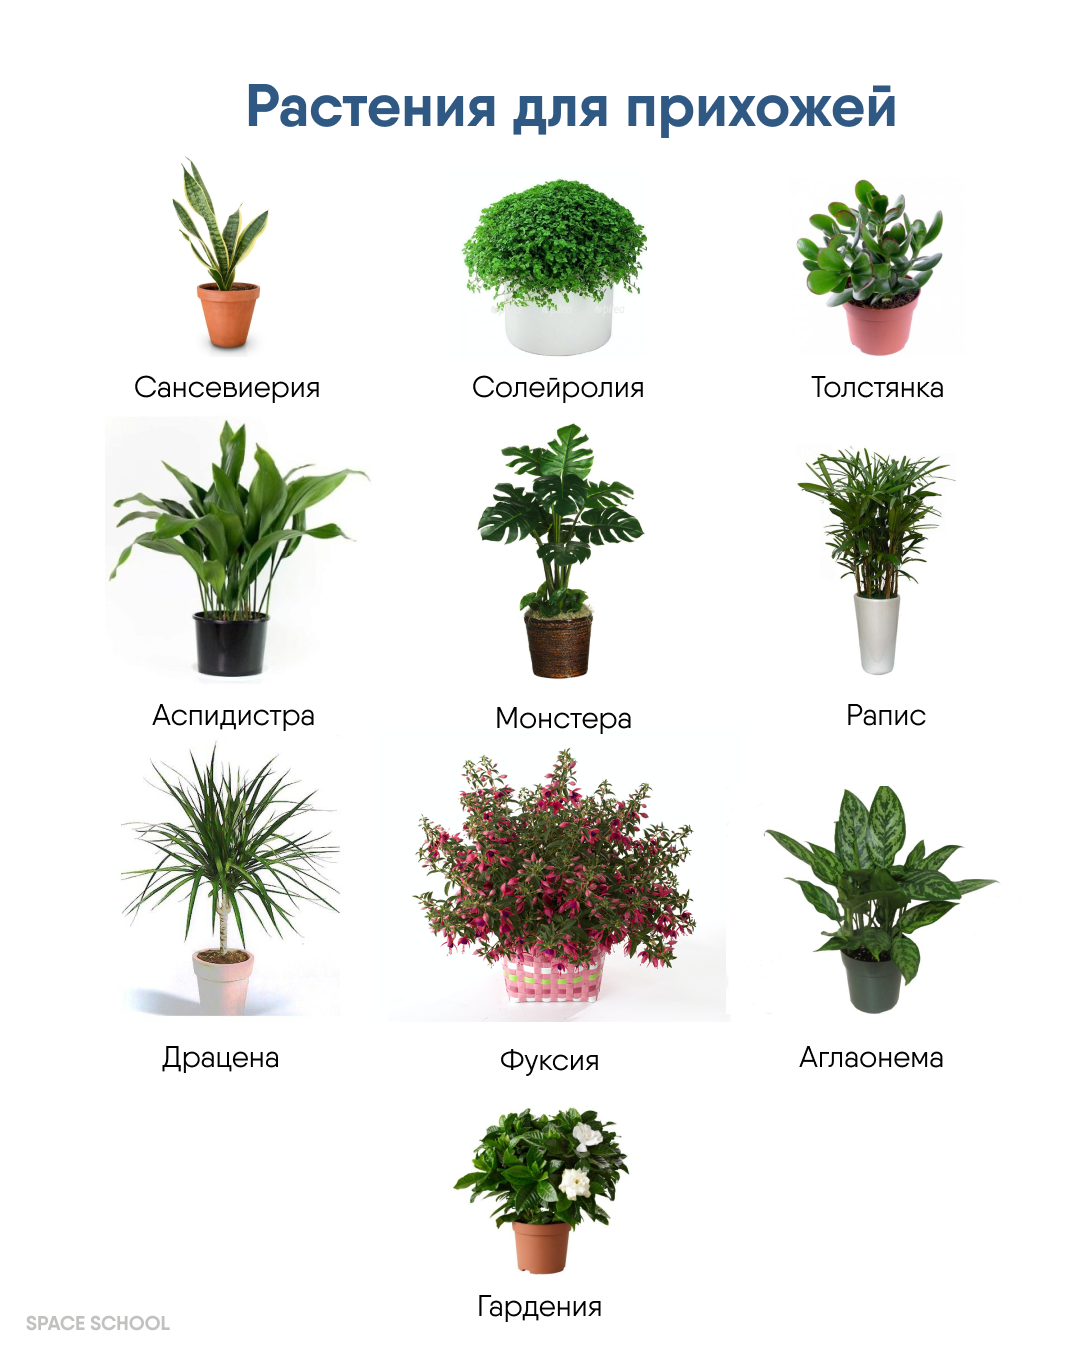 Тенелюбивые комнатные растения для прихожей и неприхотливые фото и название